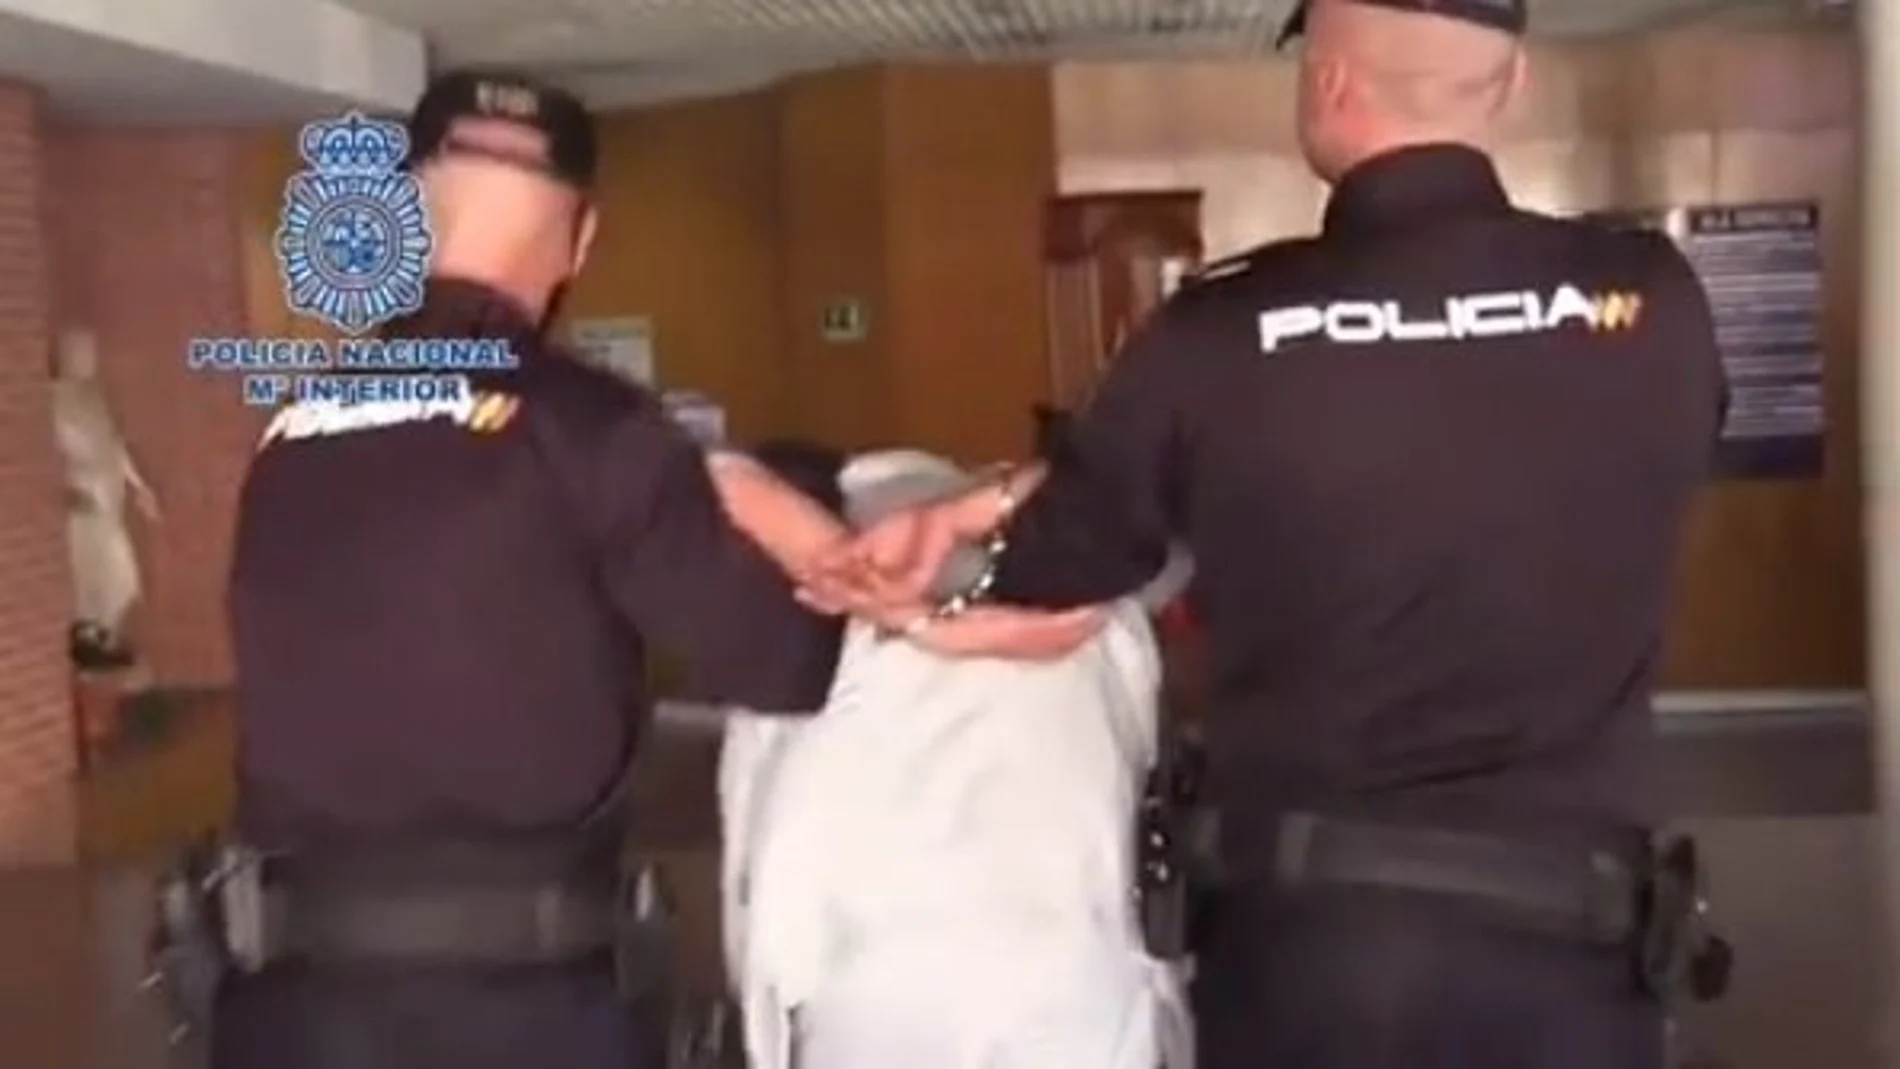 Dos policías conducen al detenido por un presunto asesinato en El Pozo (Vallecas).27/03/2019